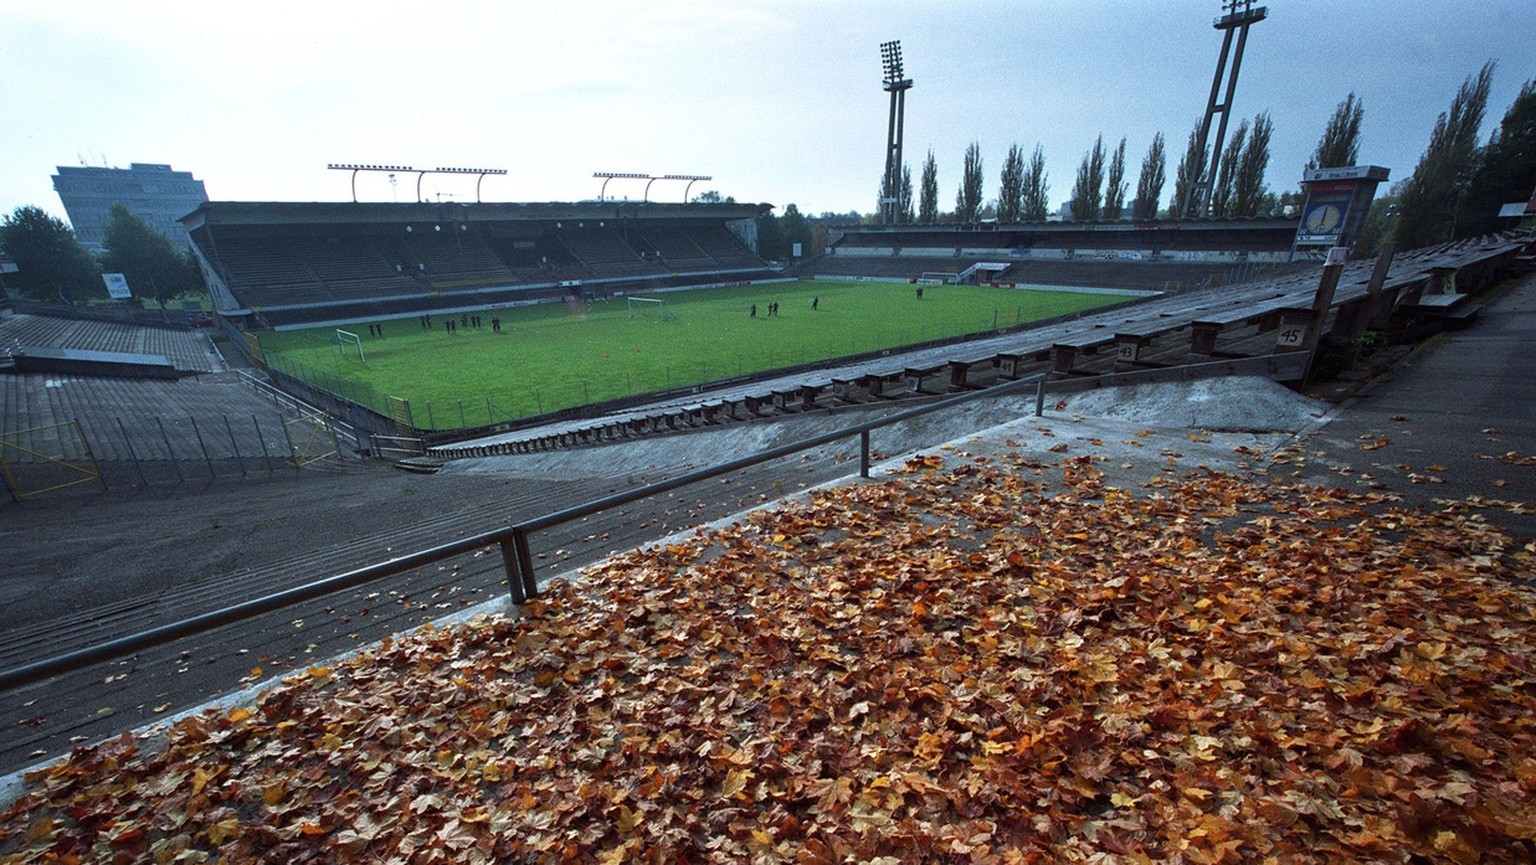 Es herbstelt am Donnerstag, 21. Oktober 1999 im Stadion Wankdorf in Bern, wo die erste Mannschaft des NLB Fussballklubs BSC Young Boys trainiert.
(KEYSTONE/Alessandro della Valle)